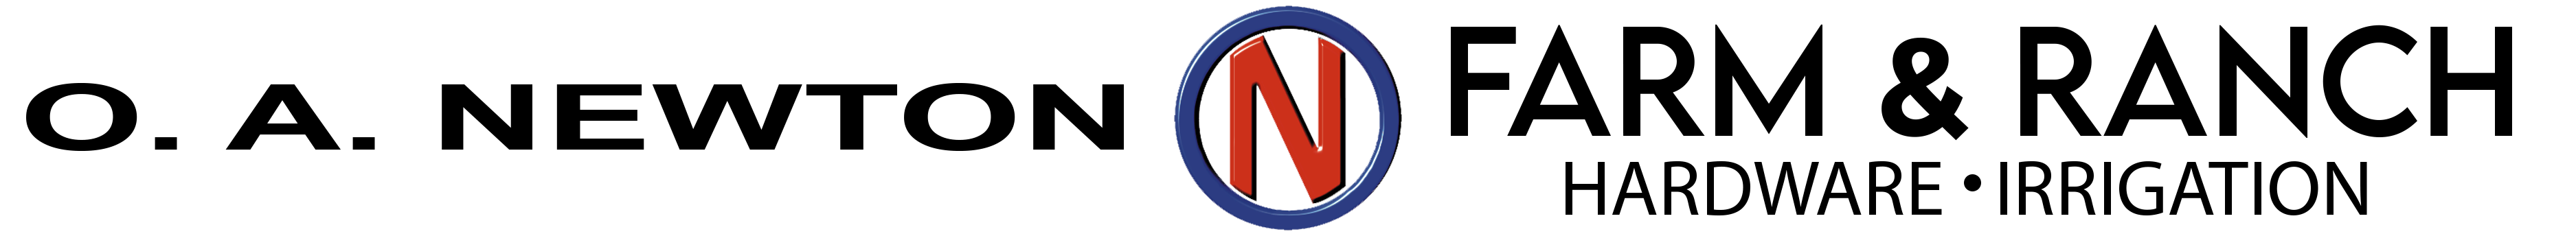 O.A. Newton logo